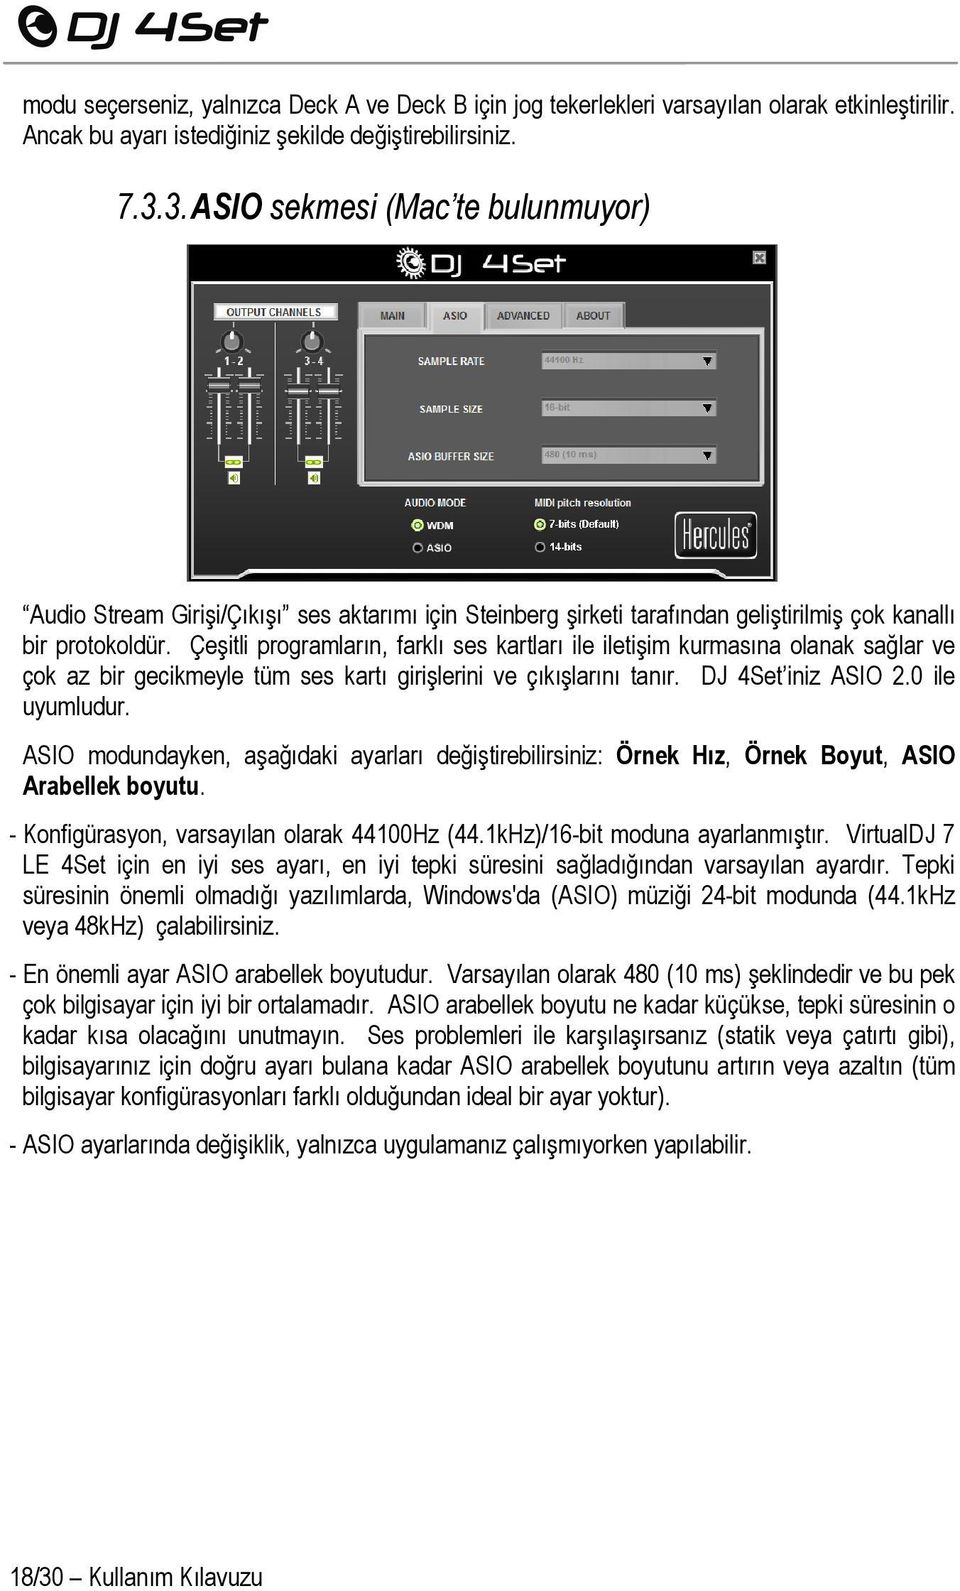 Çeşitli programların, farklı ses kartları ile iletişim kurmasına olanak sağlar ve çok az bir gecikmeyle tüm ses kartı girişlerini ve çıkışlarını tanır. DJ 4Set iniz ASIO 2.0 ile uyumludur.